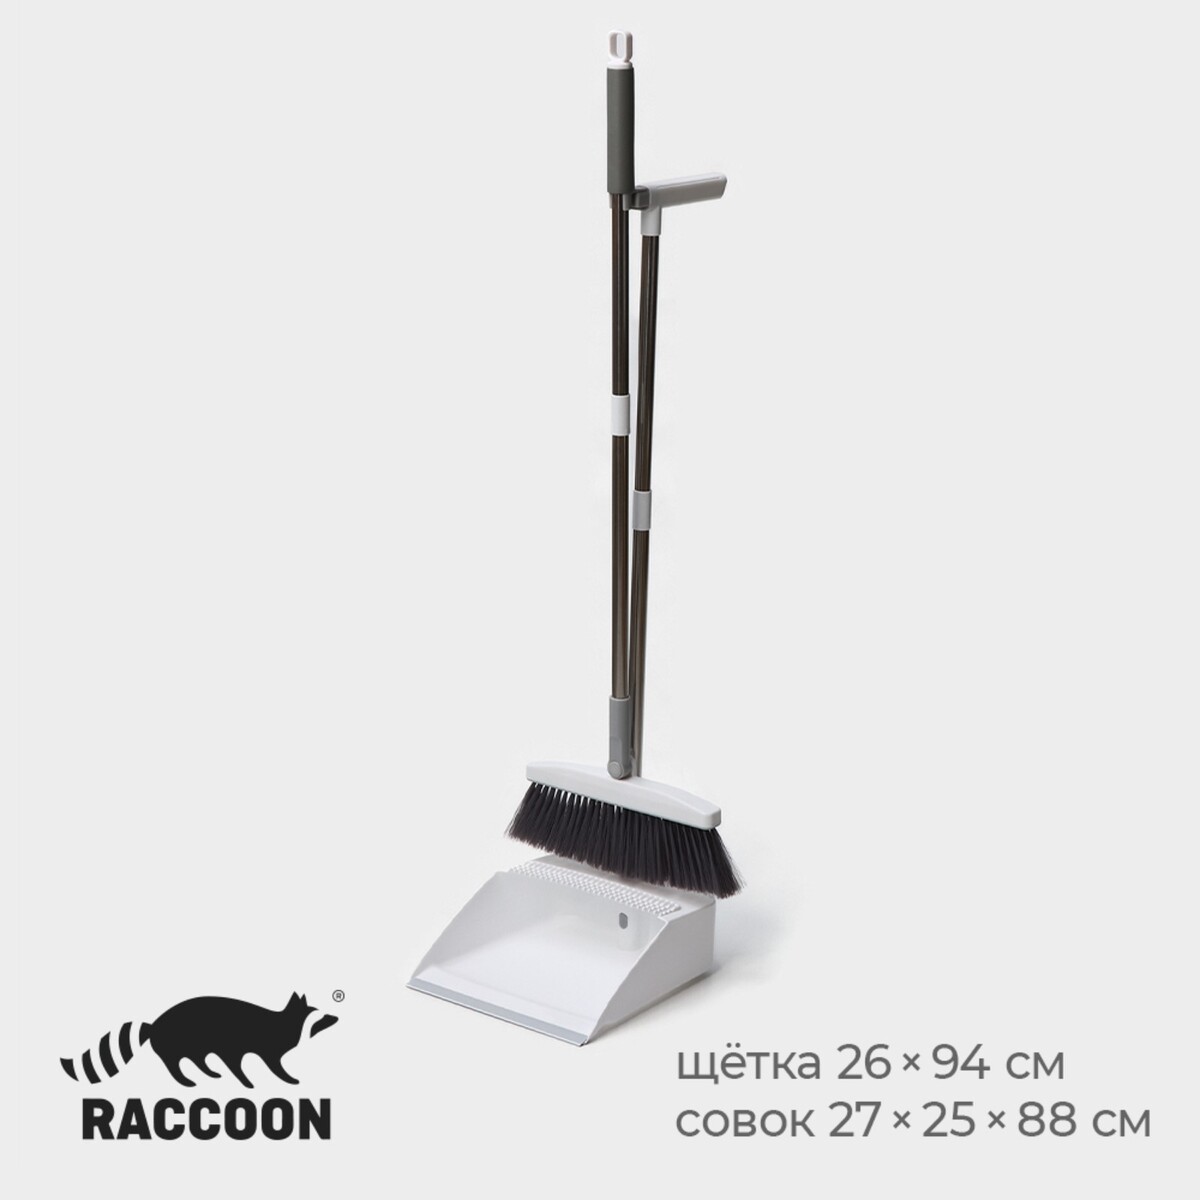 Набор для уборки raccoon, 2 предмета: щетка 26×94 см, совок 27×25×88 см, цвет белый